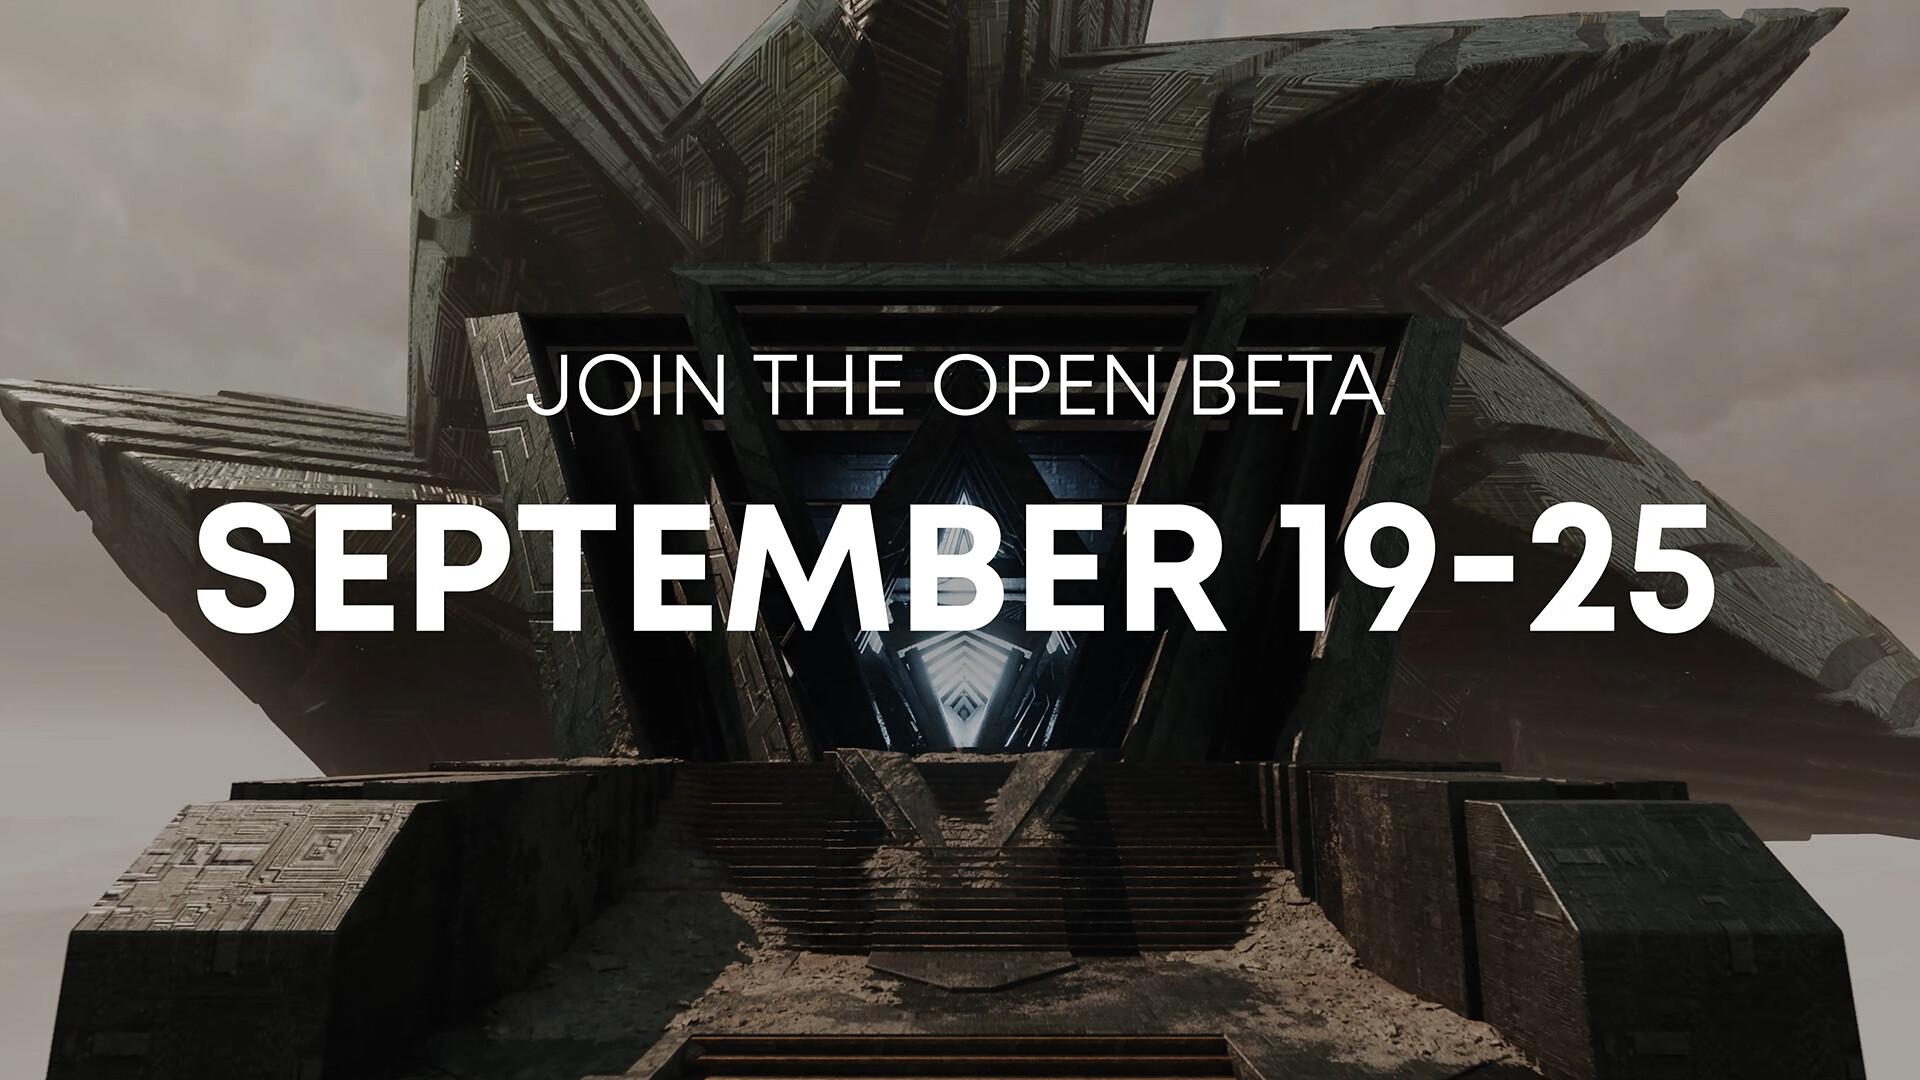 Únete a la beta abierta del 19 al 25 de septiembre